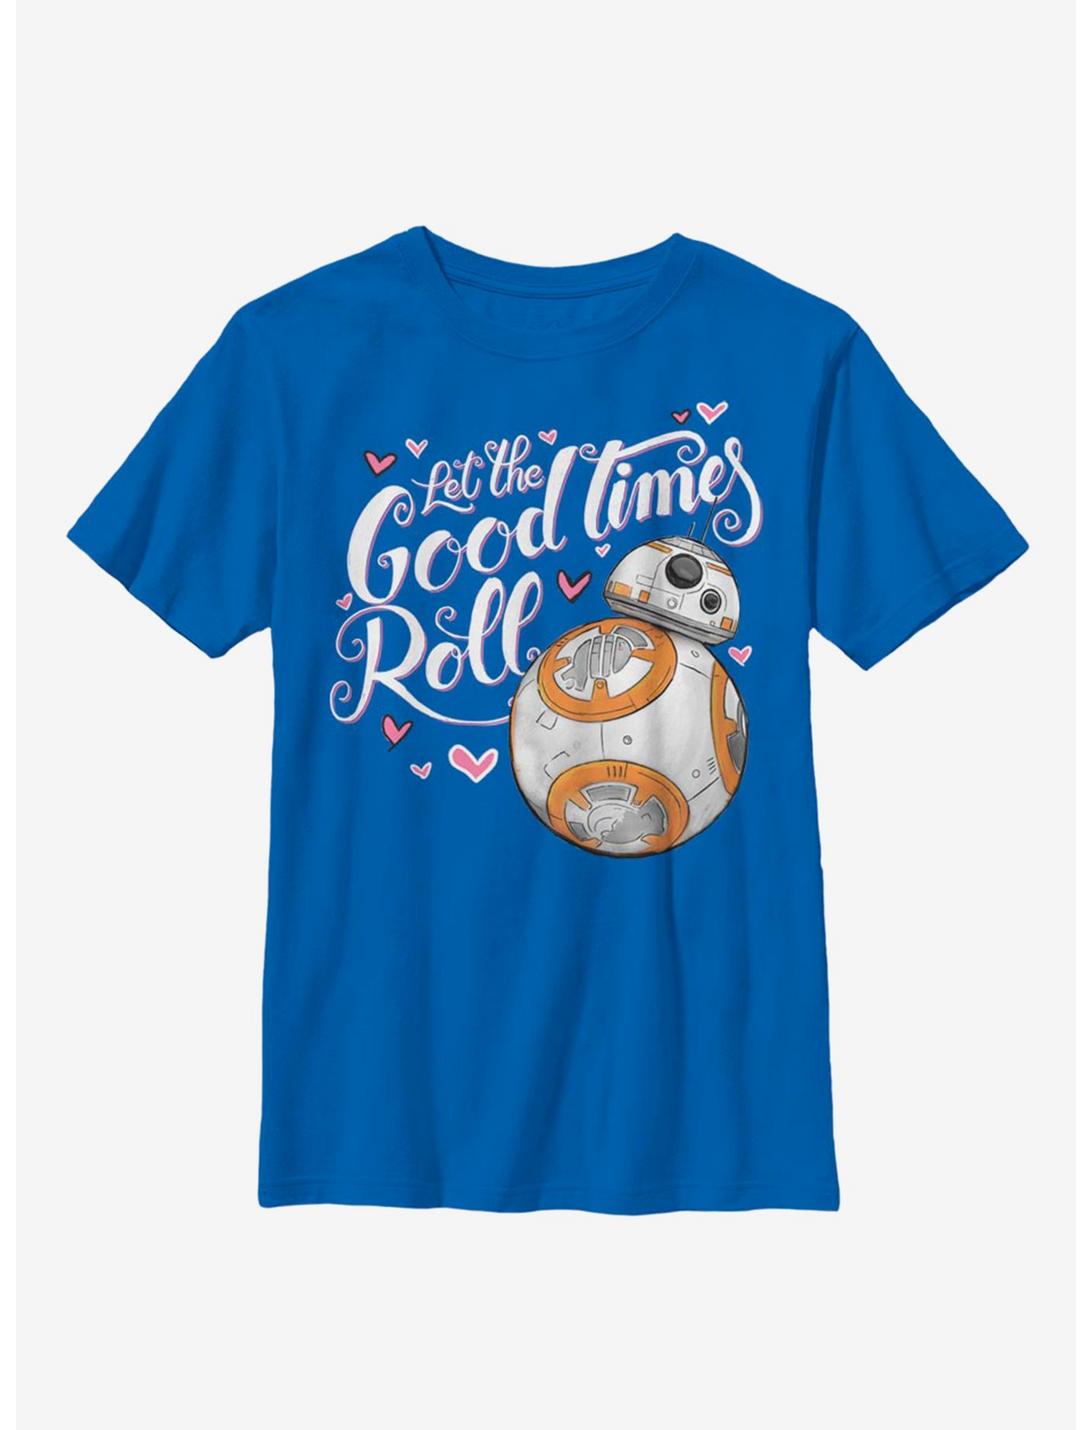 Star Wars Good Times Heart Youth T-Shirt, ROYAL, hi-res